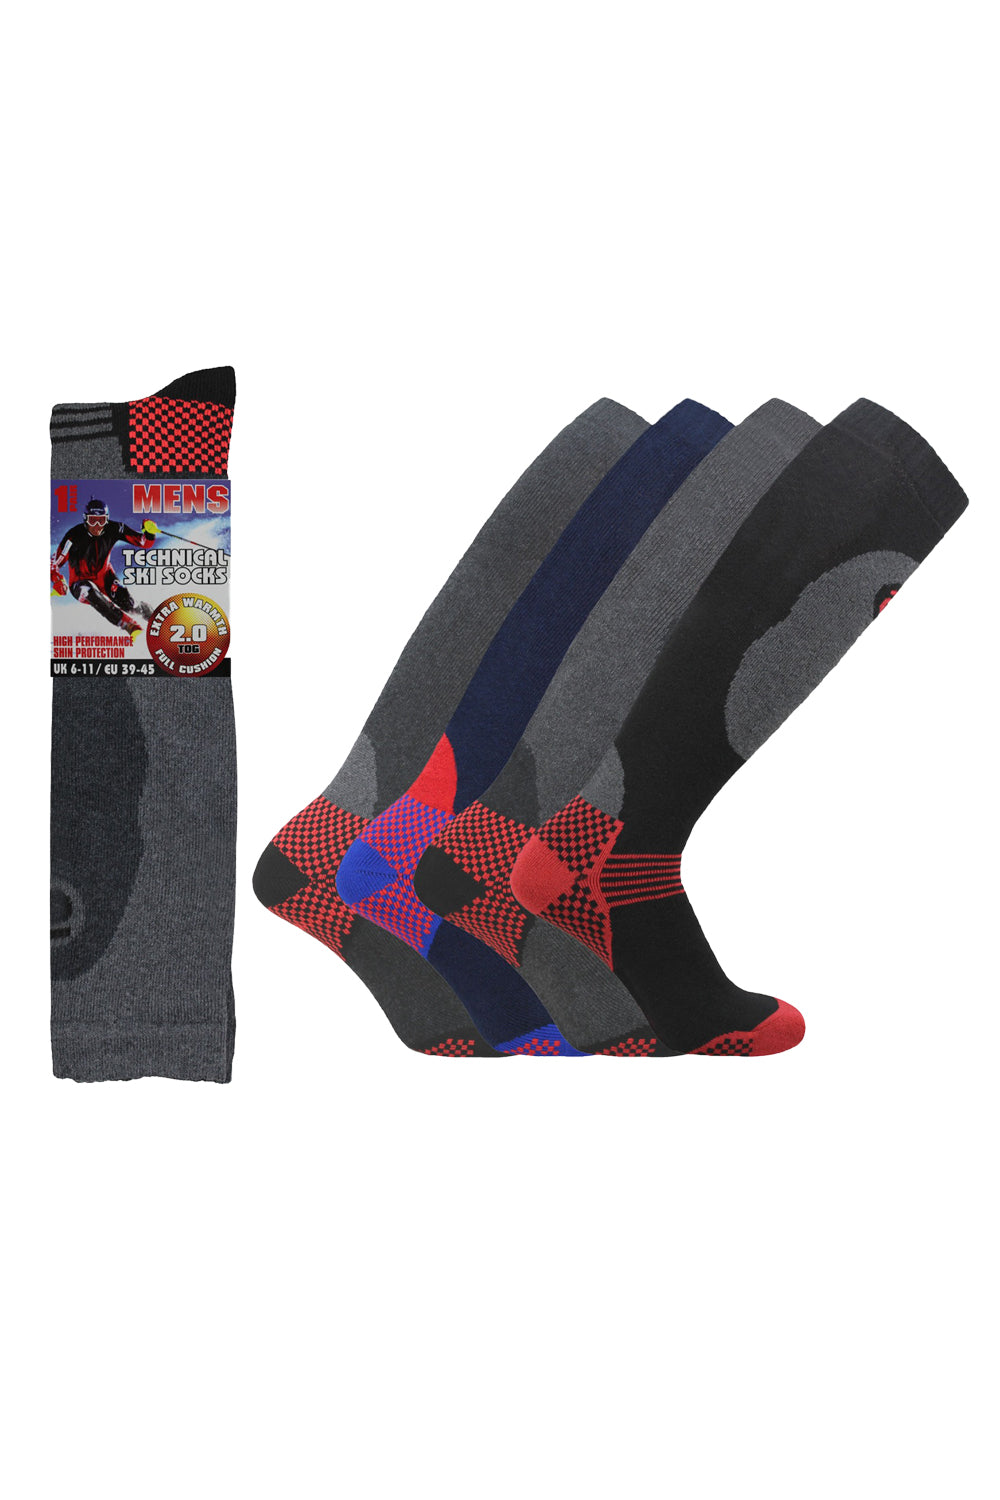 Men's Design Soft Elasticated Heat Thermal Socks 6-11